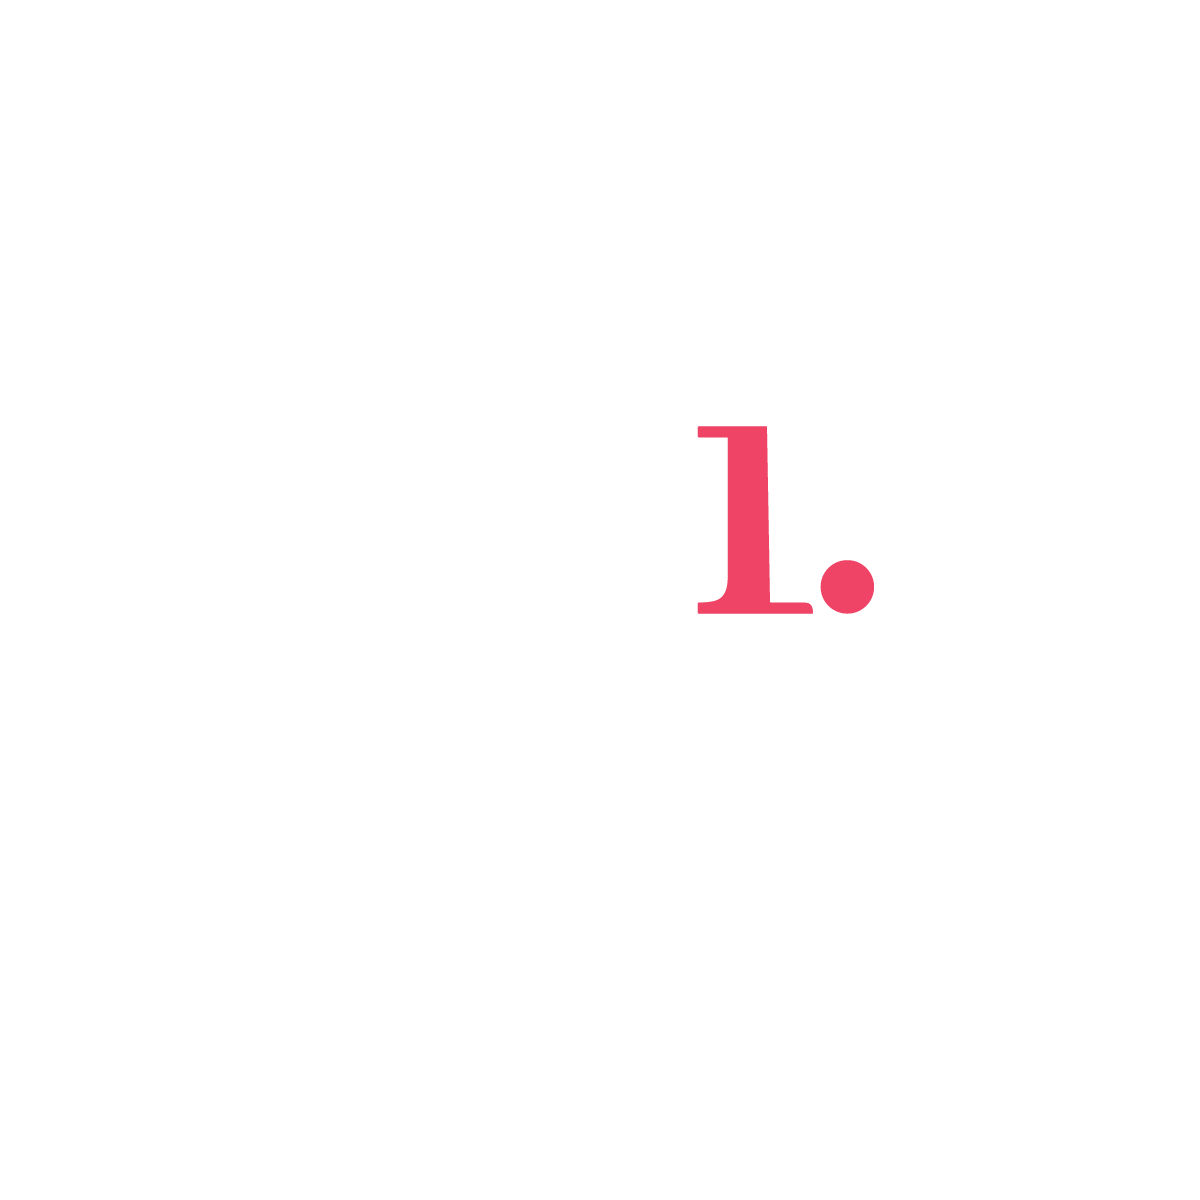 Emre Beskardes Logo